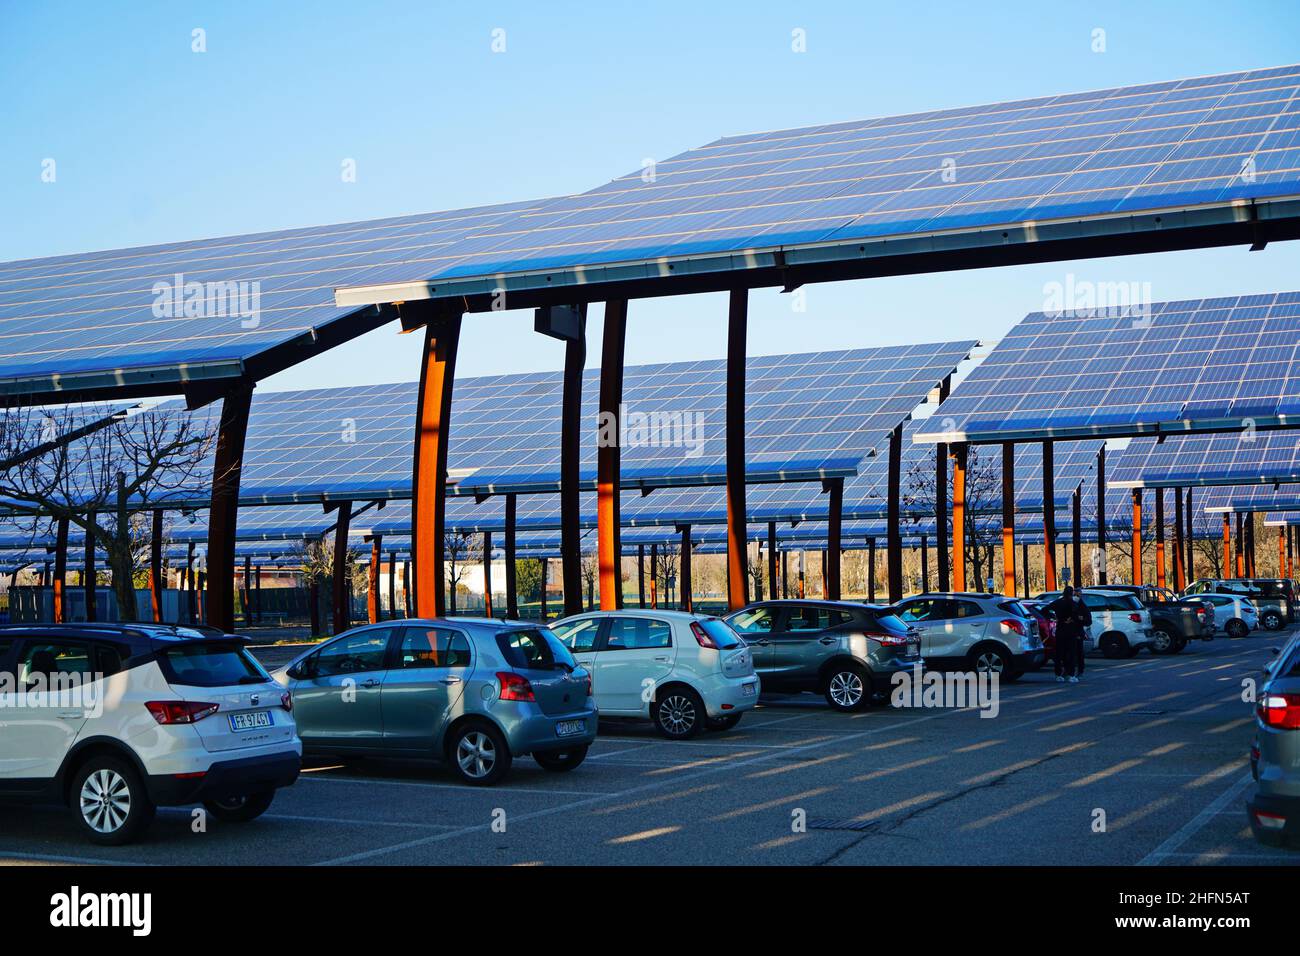 Panneaux solaires dans un parking.Les entreprises installent des sources d'énergie renouvelables pour réduire leur empreinte carbone.Padoue, Italie - janvier 2022 Banque D'Images